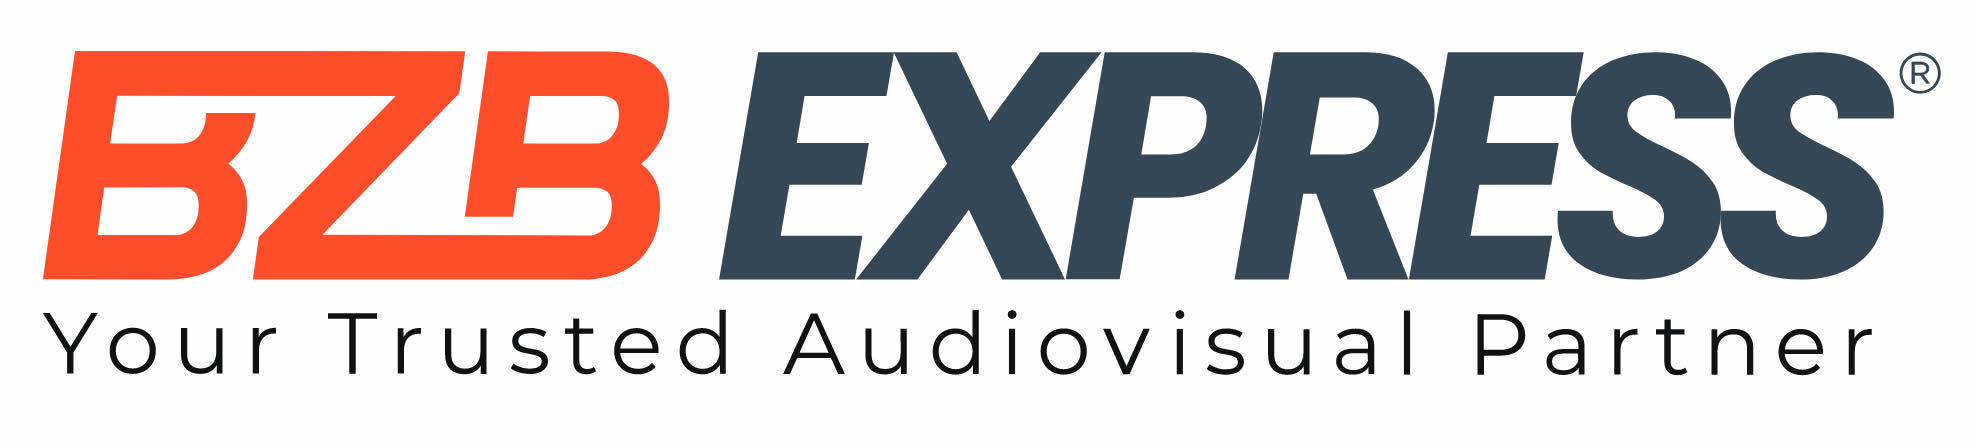 PreSonus StudioLive 16.0.2 USB Performance & Recording Digital Mixer